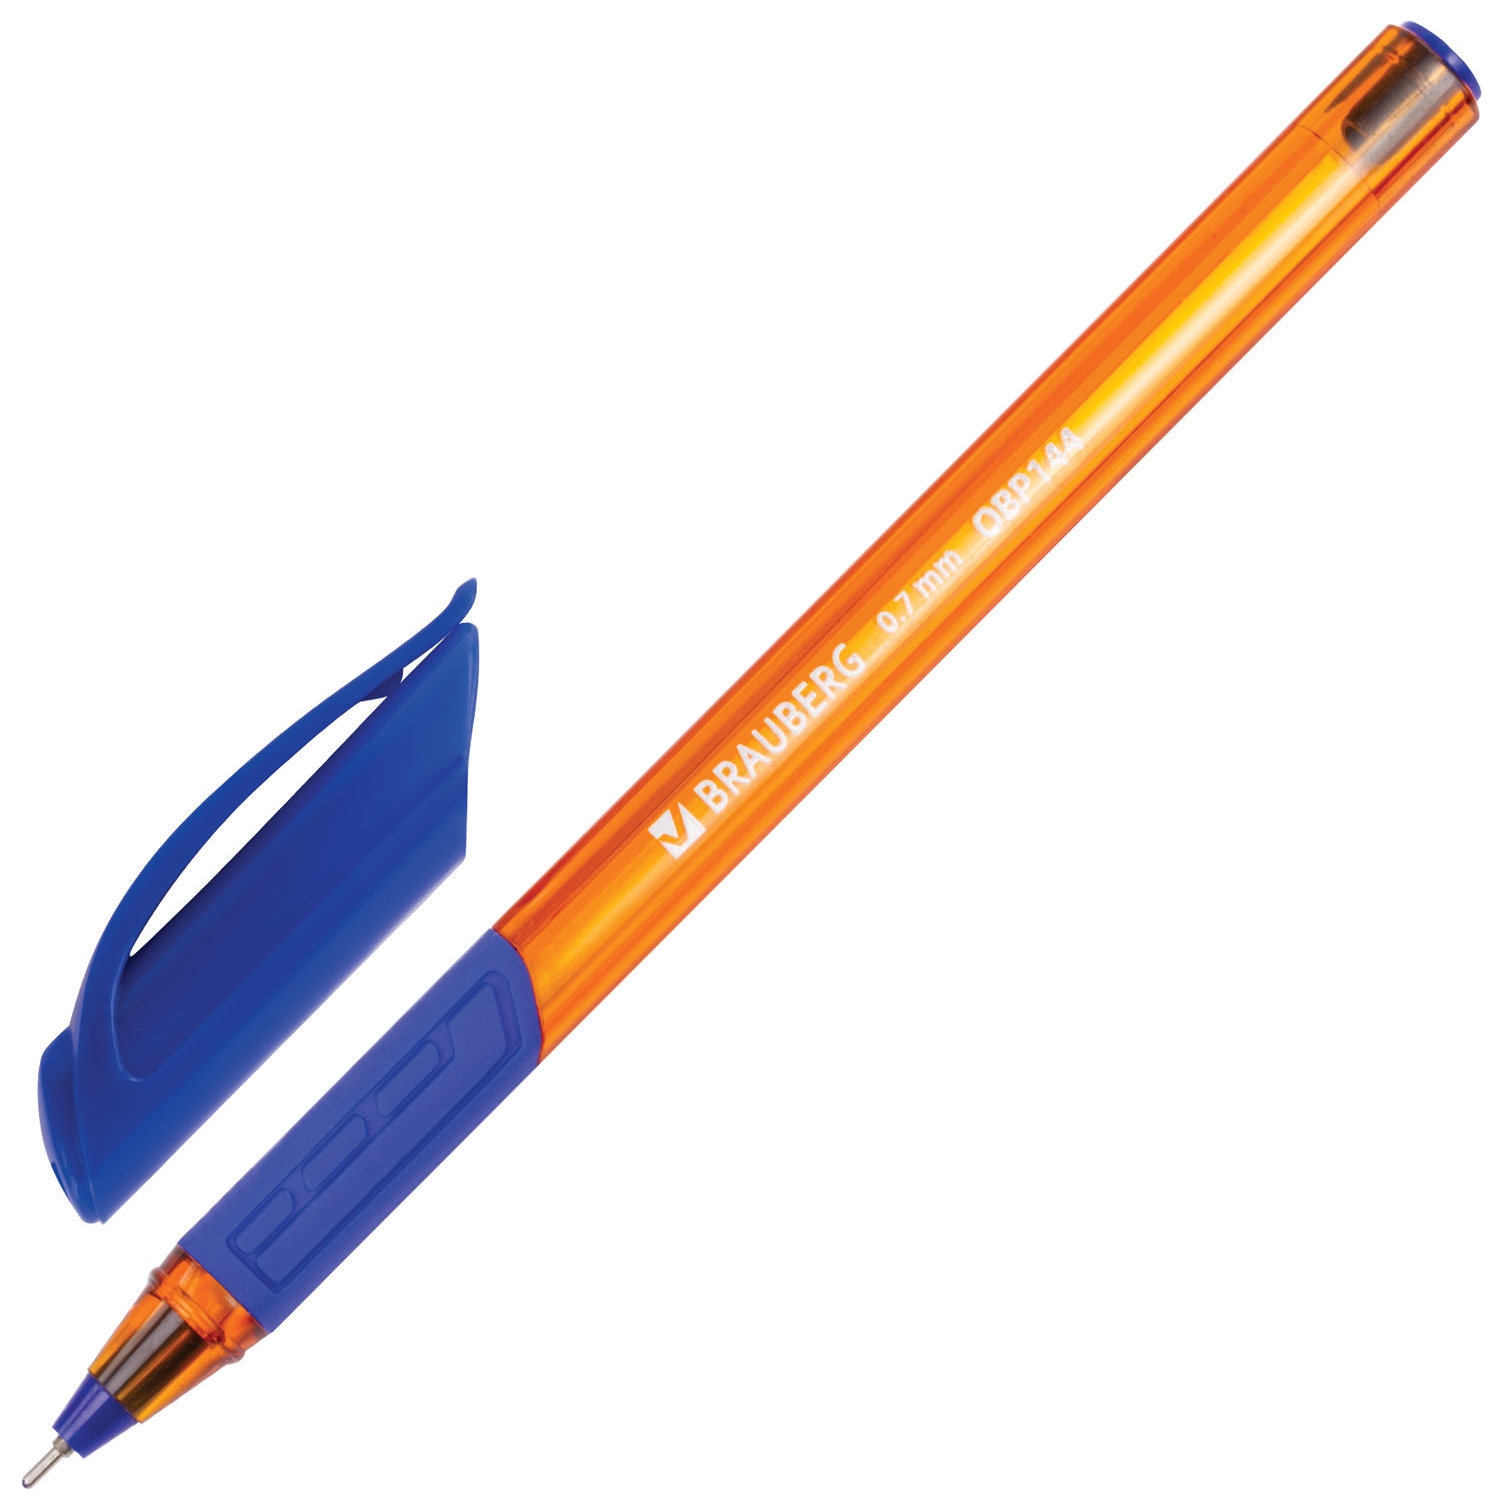 Brauberg 0.7. Ручка шариковая синяя БРАУБЕРГ. Ручка БРАУБЕРГ 0.7 масляная. Ручка шариковая БРАУБЕРГ 0.7. Ручка БРАУБЕРГ синяя масляная.